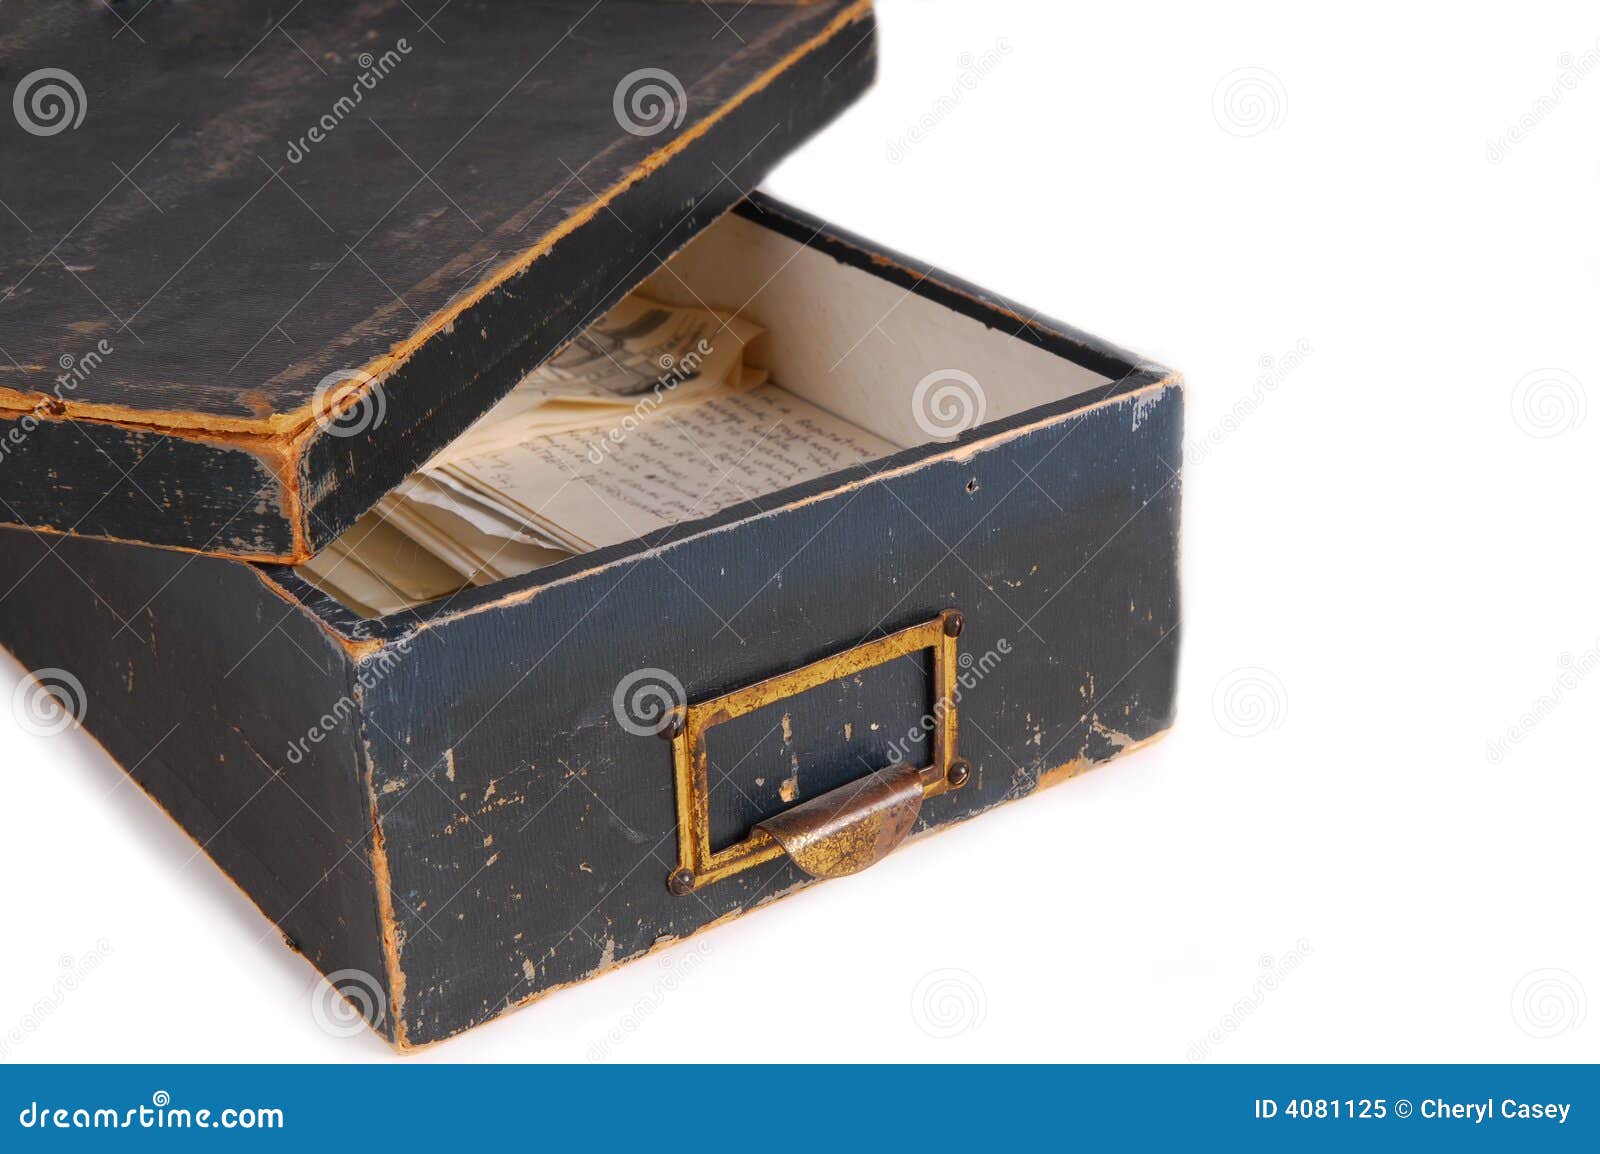 keepsake box